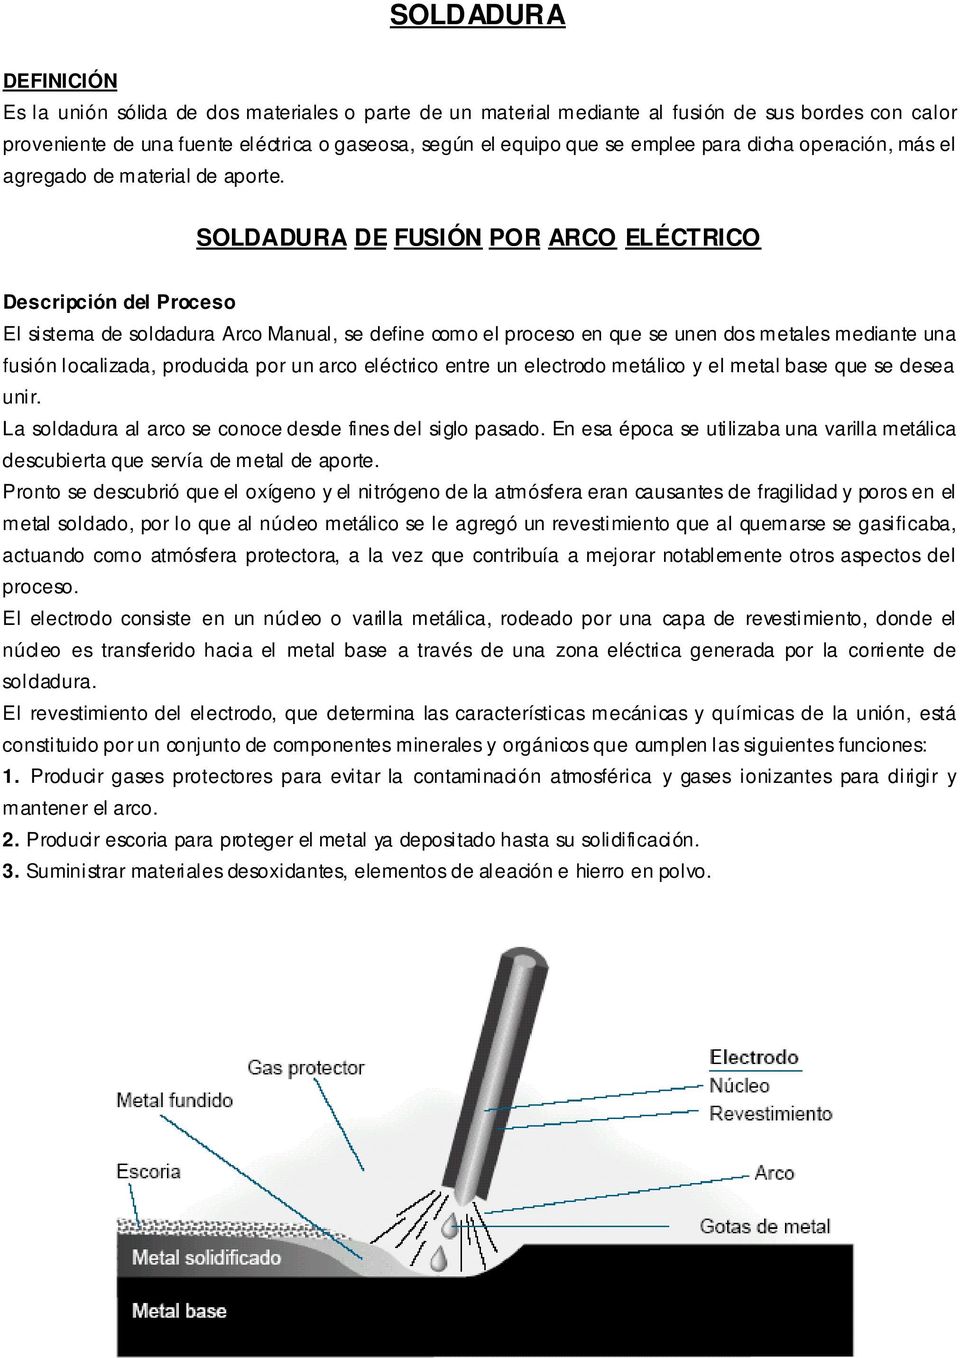 SOLDADURA DE FUSIÓN POR ARCO ELÉCTRICO Descripción del Proceso El sistema de soldadura Arco Manual, se define como el proceso en que se unen dos metales mediante una fusión localizada, producida por